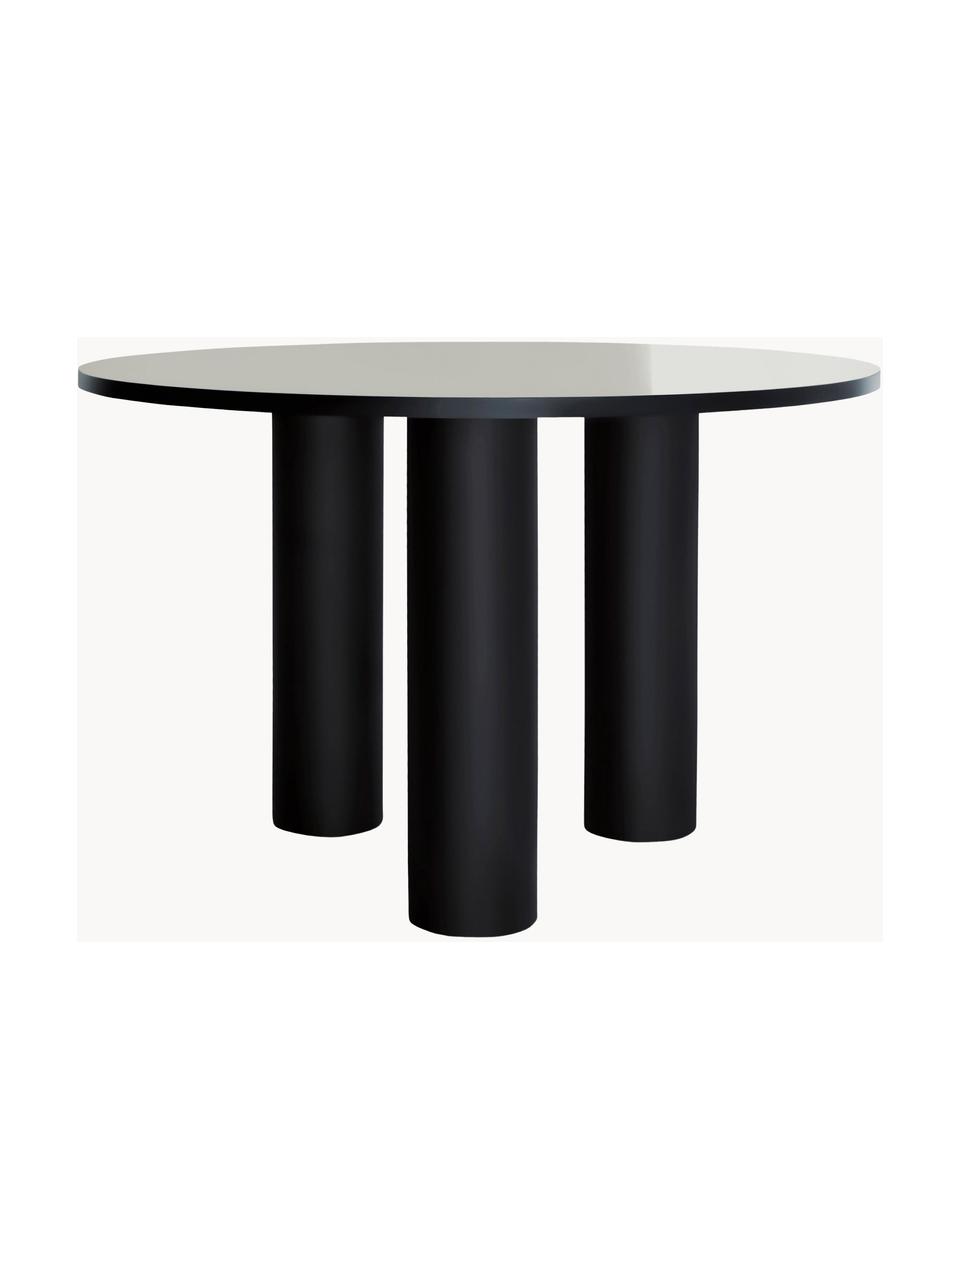 Kulatý jídelní stůl Colette, Ø 120 cm, MDF deska (dřevovláknitá deska střední hustoty) s lakovanou dýhou z ořechového dřeva, certifikace FSC, Černá, Ø 120 cm